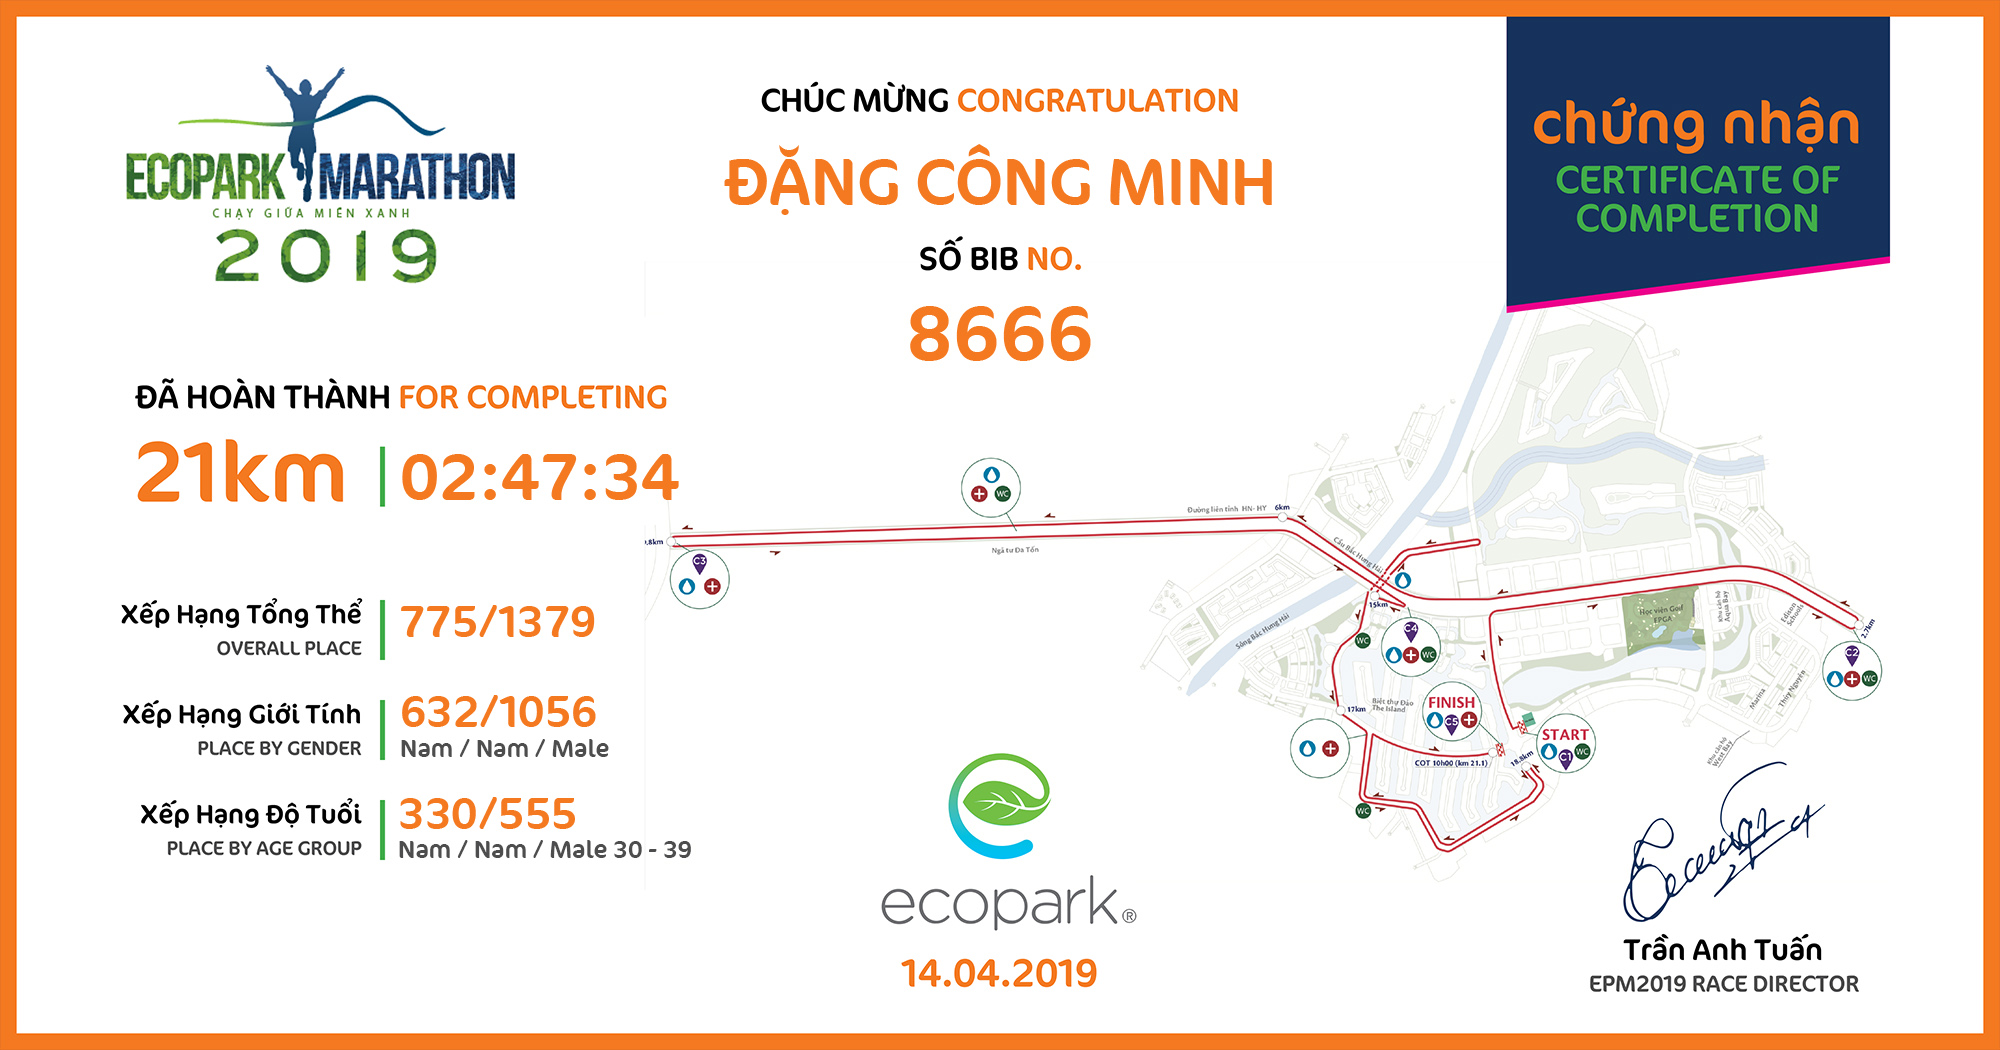 8666 - Đặng Công Minh